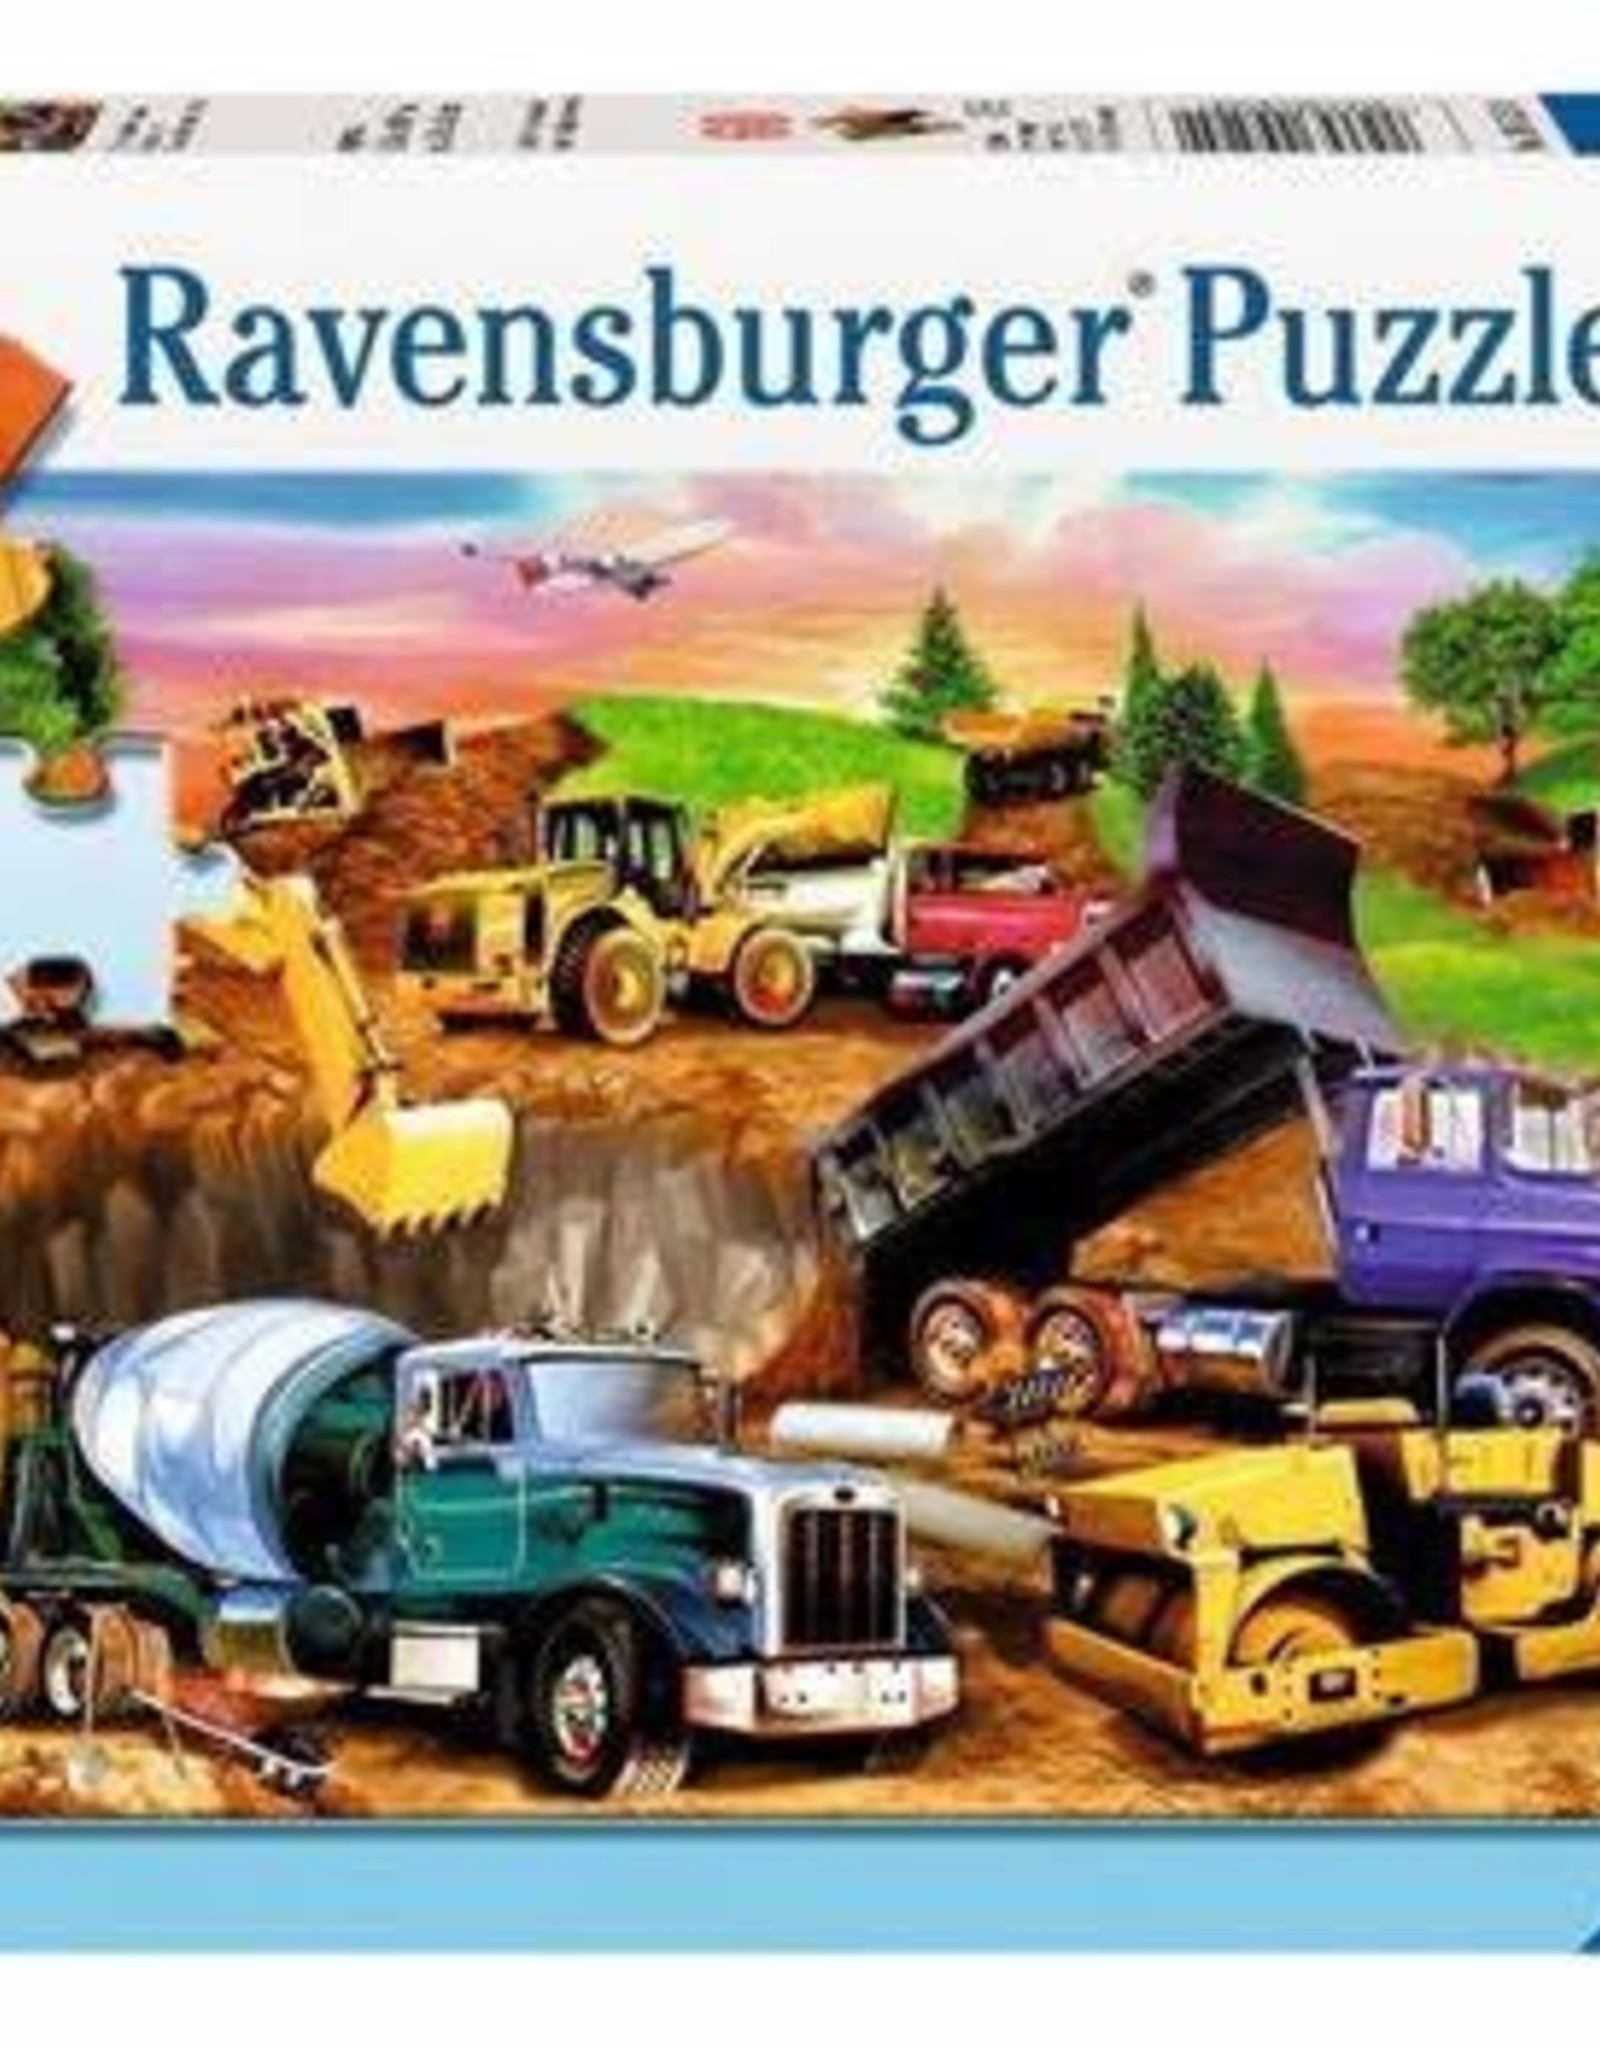 Ravensburger Construction Crowd 60pc Puzzle